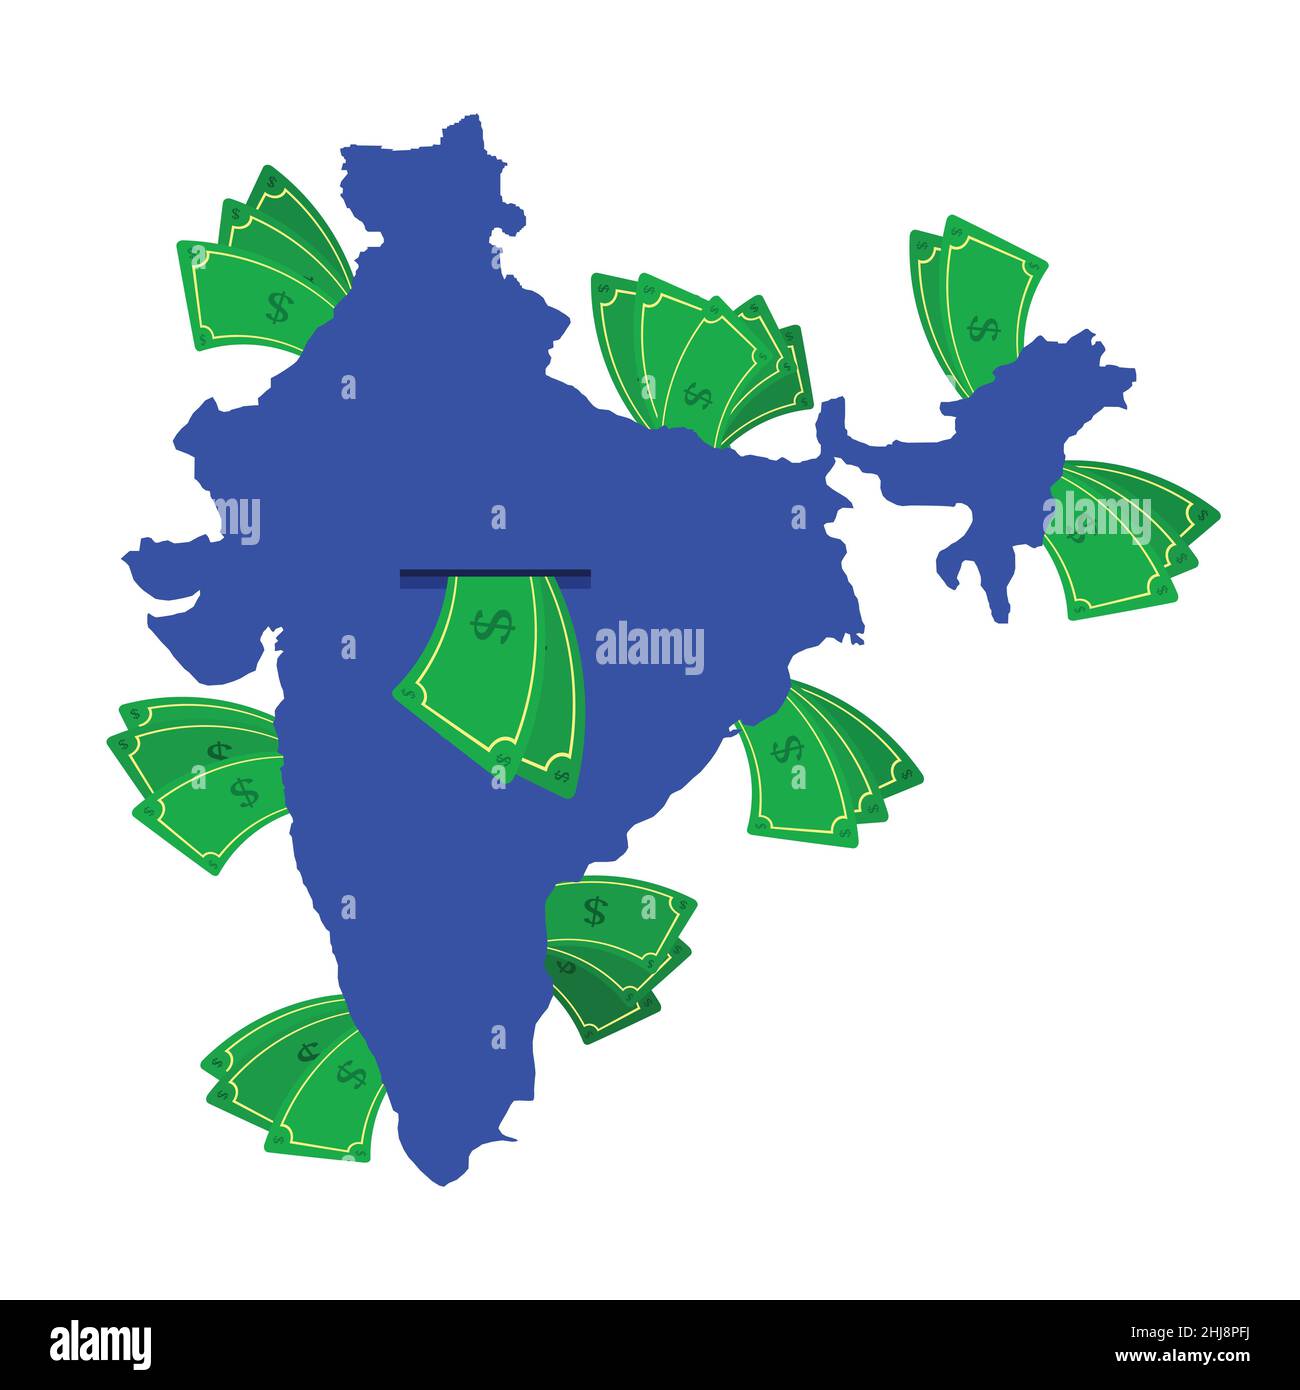 Carte de l'Inde en bleu avec des factures d'argent autour.Argent quittant le centre du pays.Économie du pays indien.Arrière-plan blanc.Isolé. Illustration de Vecteur